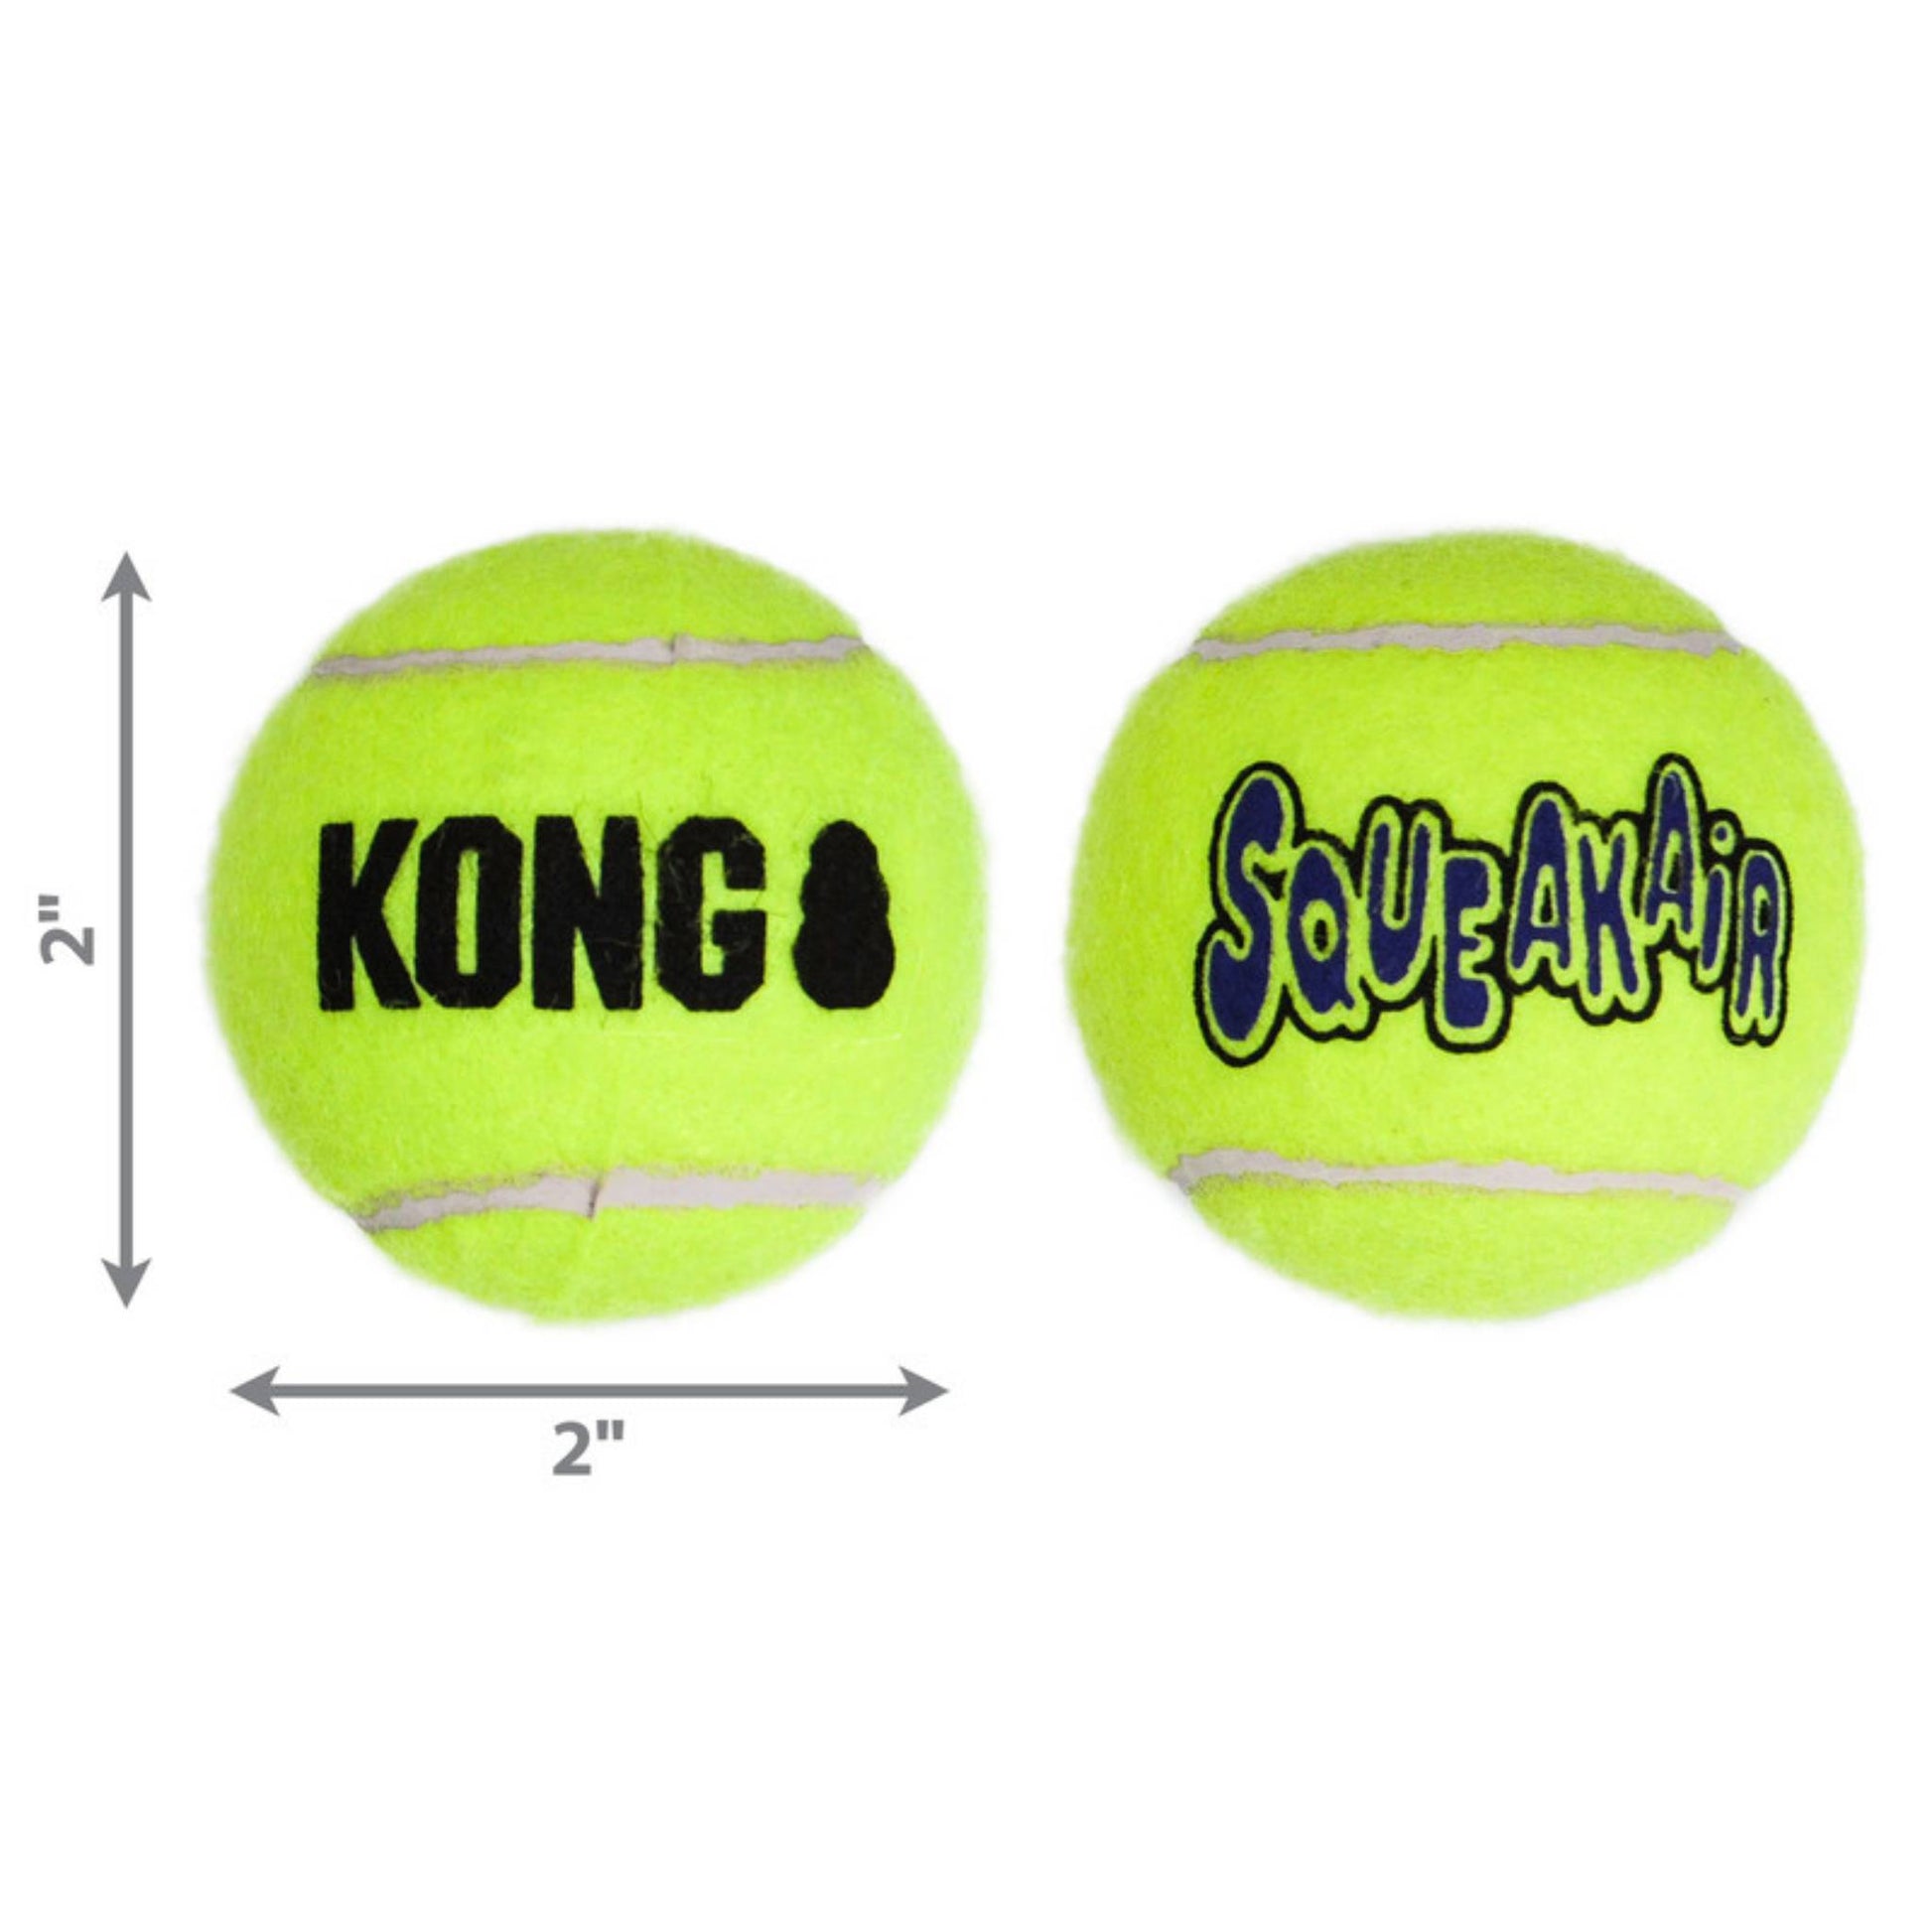 Kong squeakair dog ball small dimensions